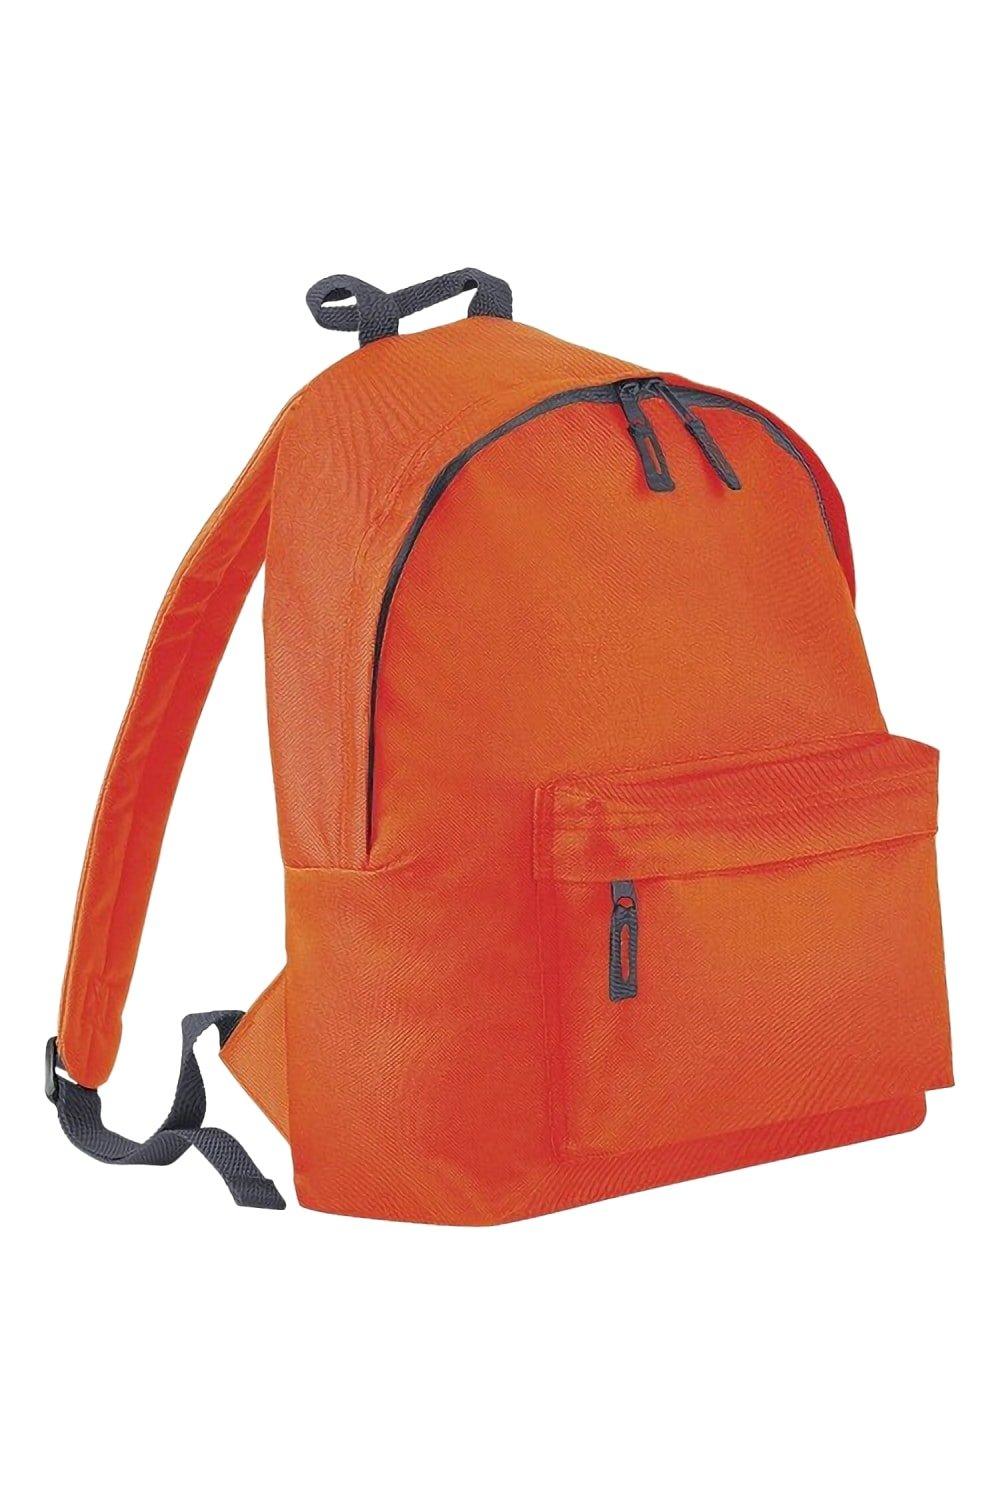 яр 19 весенний венок электронная схема Модный рюкзак / рюкзак (14 литров) Bagbase, оранжевый